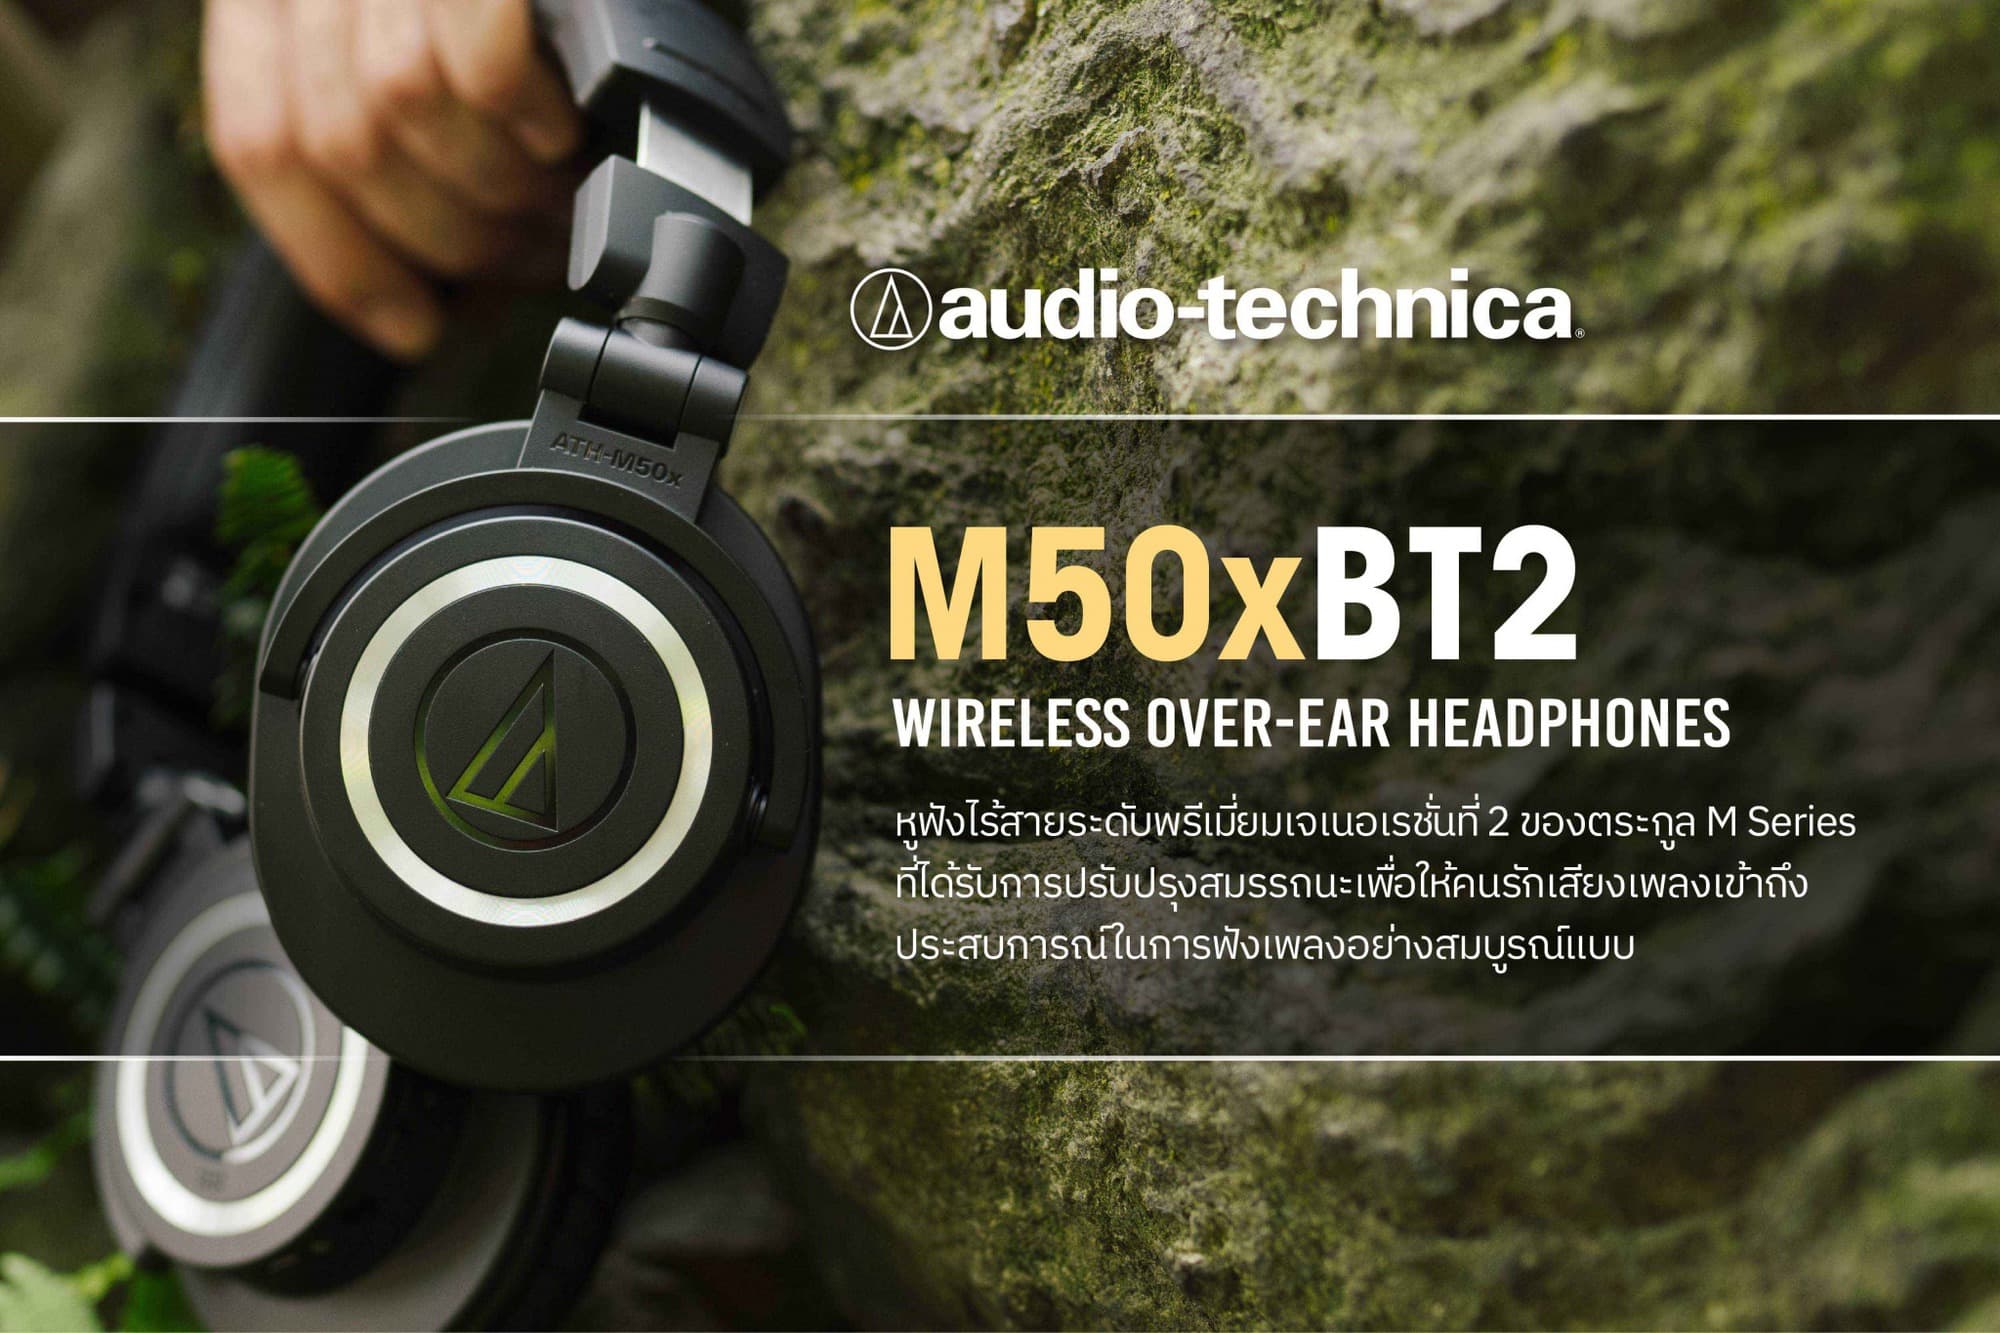 ยกระดับคุณภาพการฟังเพลงให้คมชัดระดับมืออาชีพและสะดวกสบายยิ่งกว่าเดิมกับ Audio-Technica ATH-M50xBT2 สุดยอดหูฟังไร้สาย 1